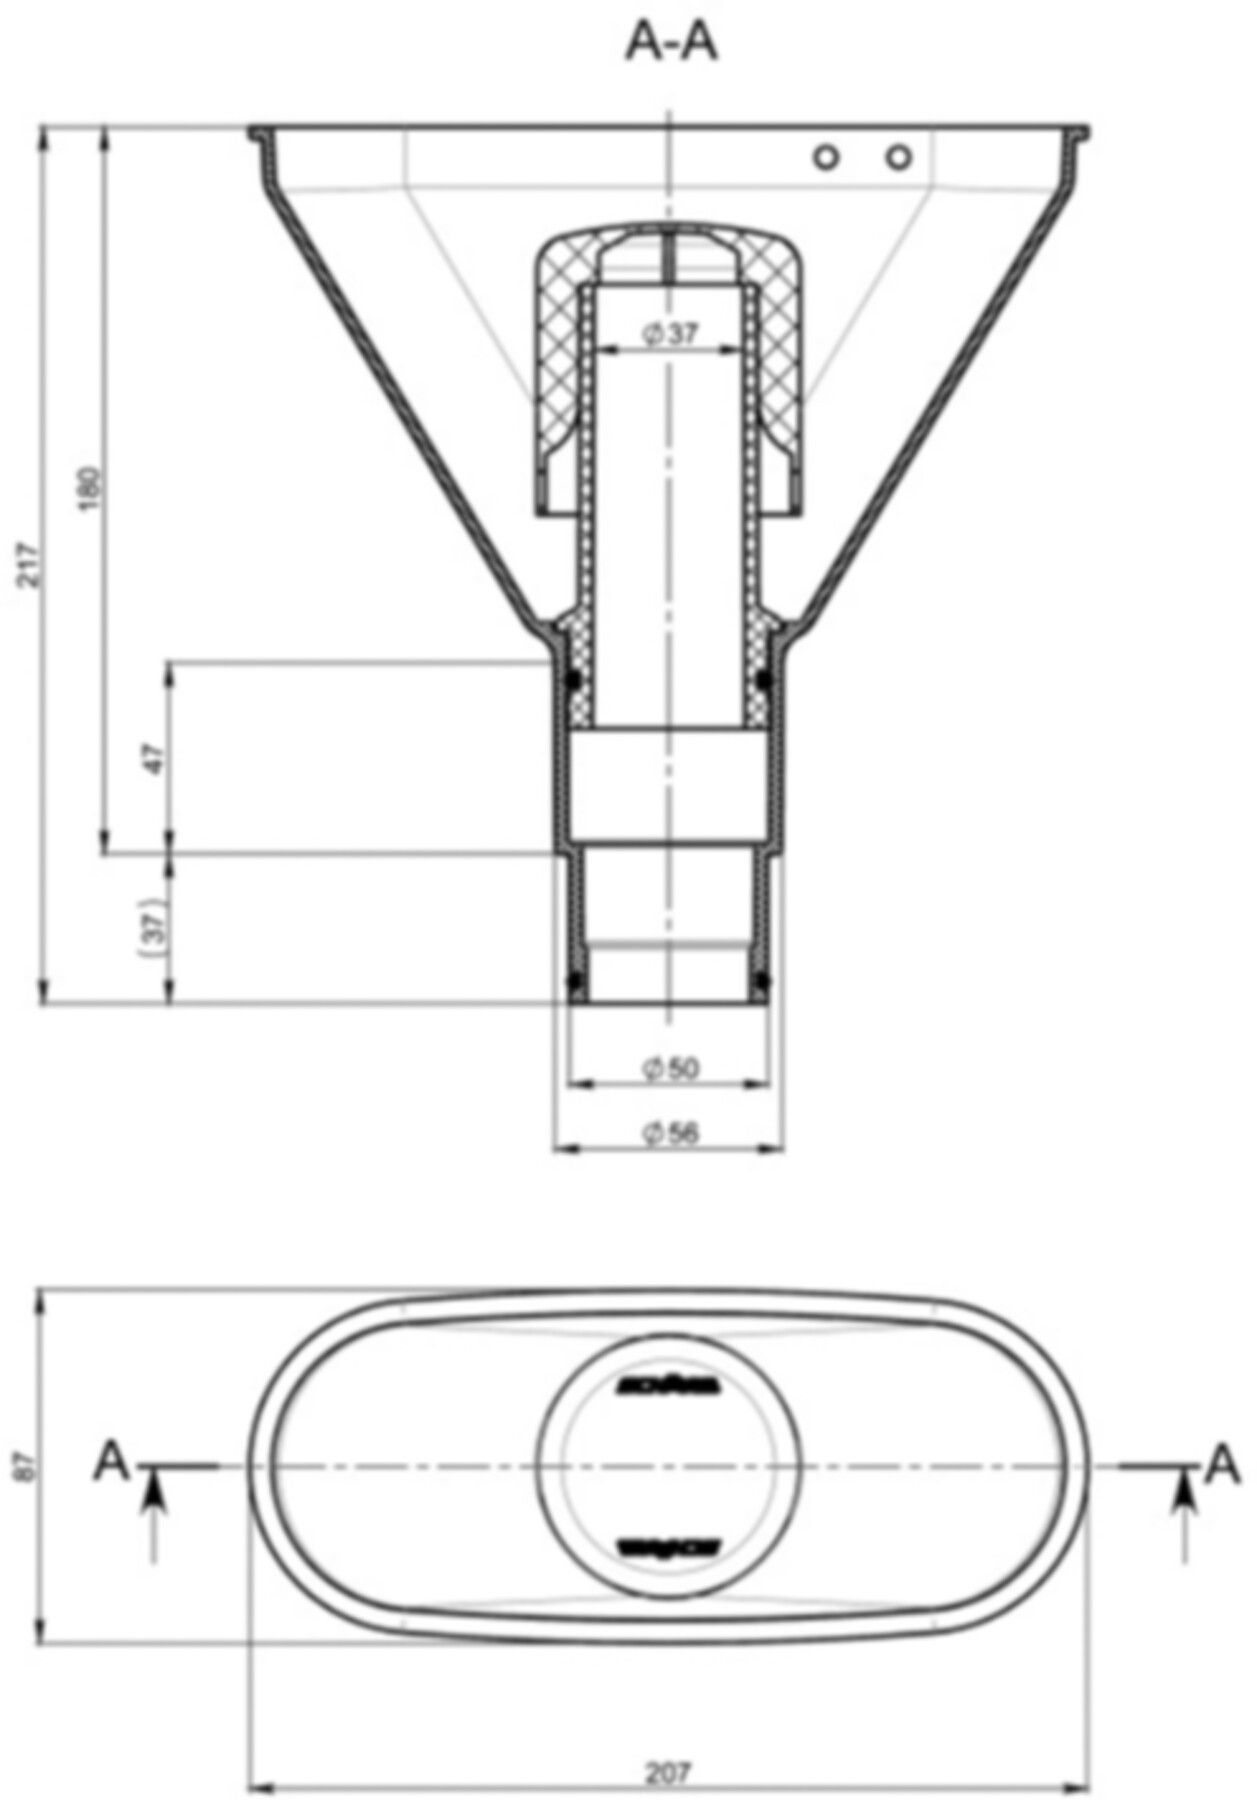 Siphonrohr für Universal-Einlauftrichter mit Siphondeckel/O-Ring 21.002 - KEWA-Trichter